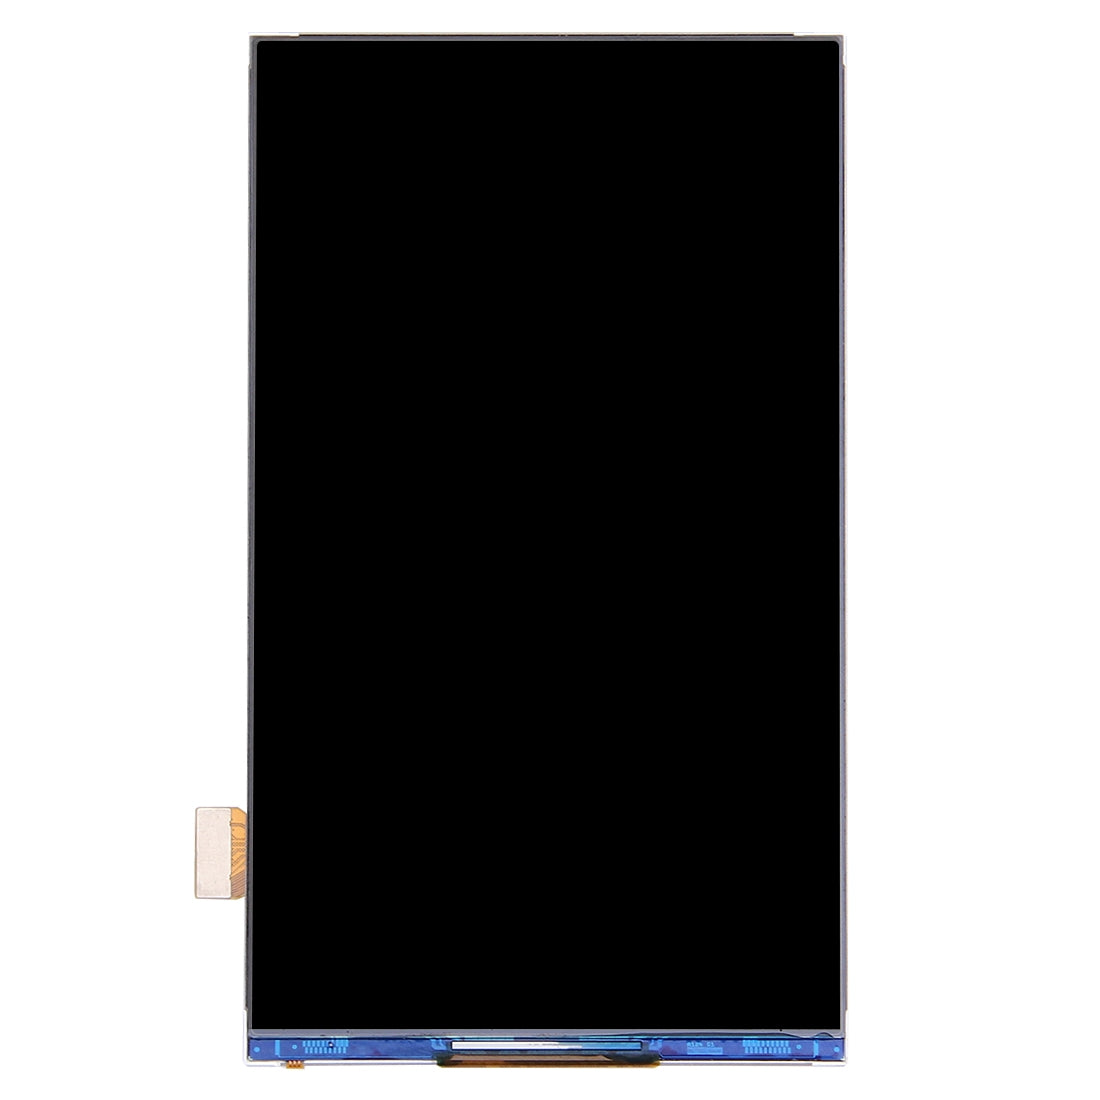 Pantalla LCD Display Interno Samsung Galaxy Grand Max G7200